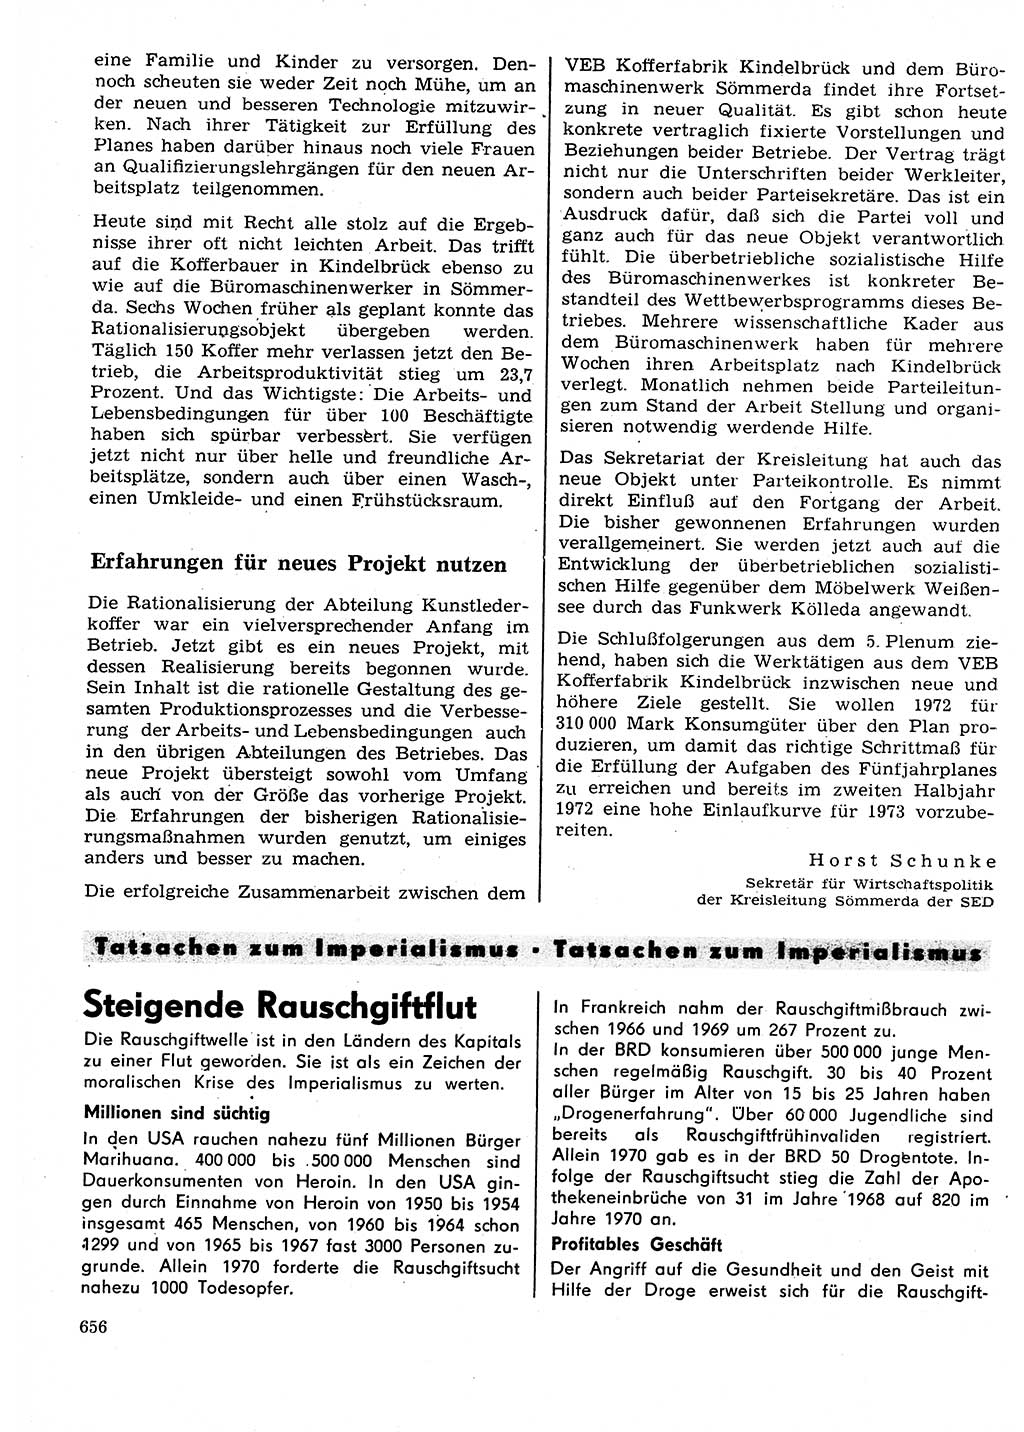 Neuer Weg (NW), Organ des Zentralkomitees (ZK) der SED (Sozialistische Einheitspartei Deutschlands) für Fragen des Parteilebens, 27. Jahrgang [Deutsche Demokratische Republik (DDR)] 1972, Seite 656 (NW ZK SED DDR 1972, S. 656)